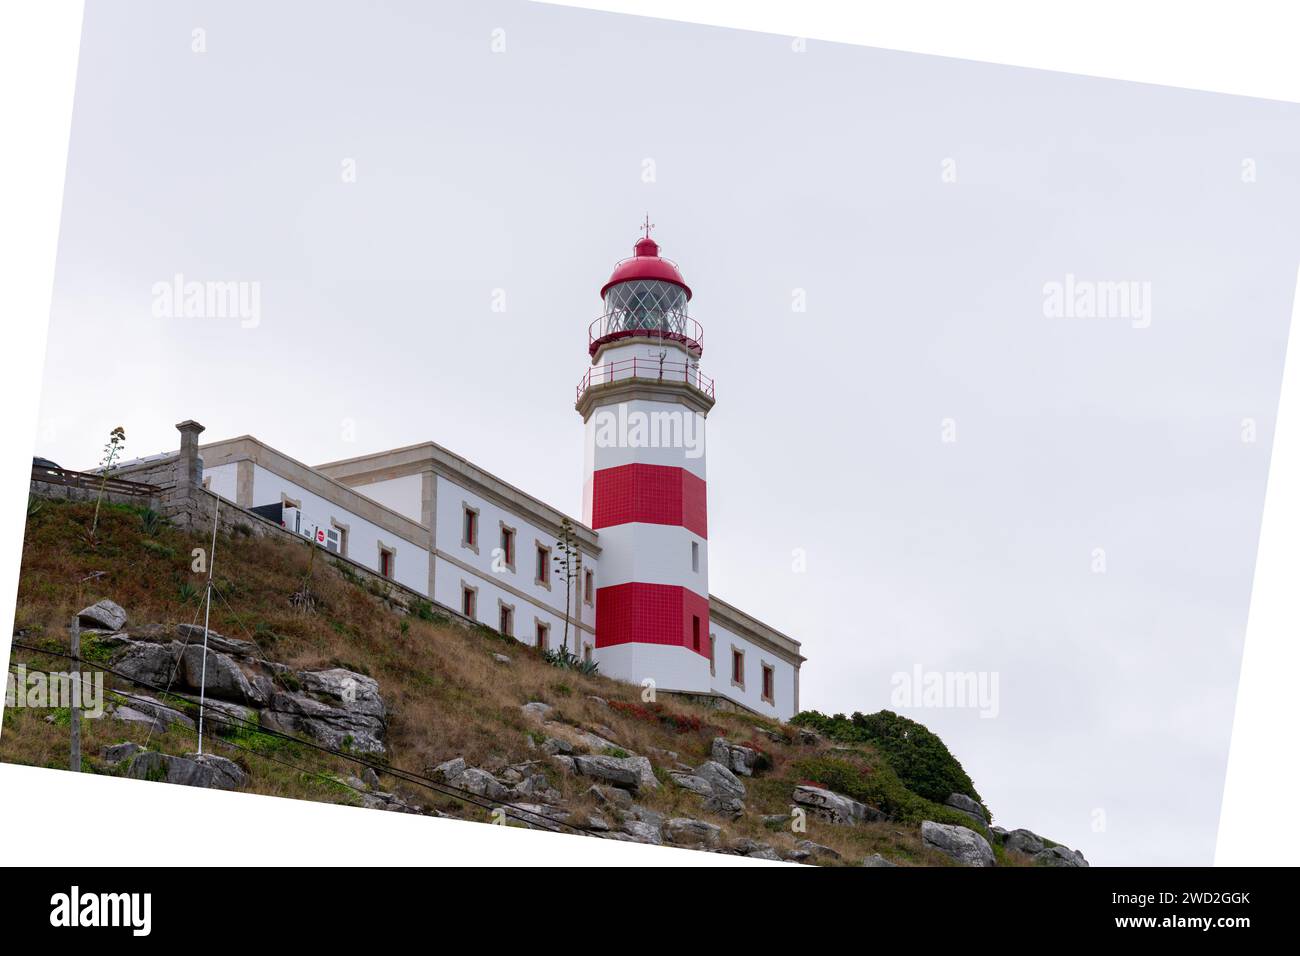 Le phare de Cabo Silleiro avec ses bandes rouges sur la montagne rocheuse guide les marins Banque D'Images